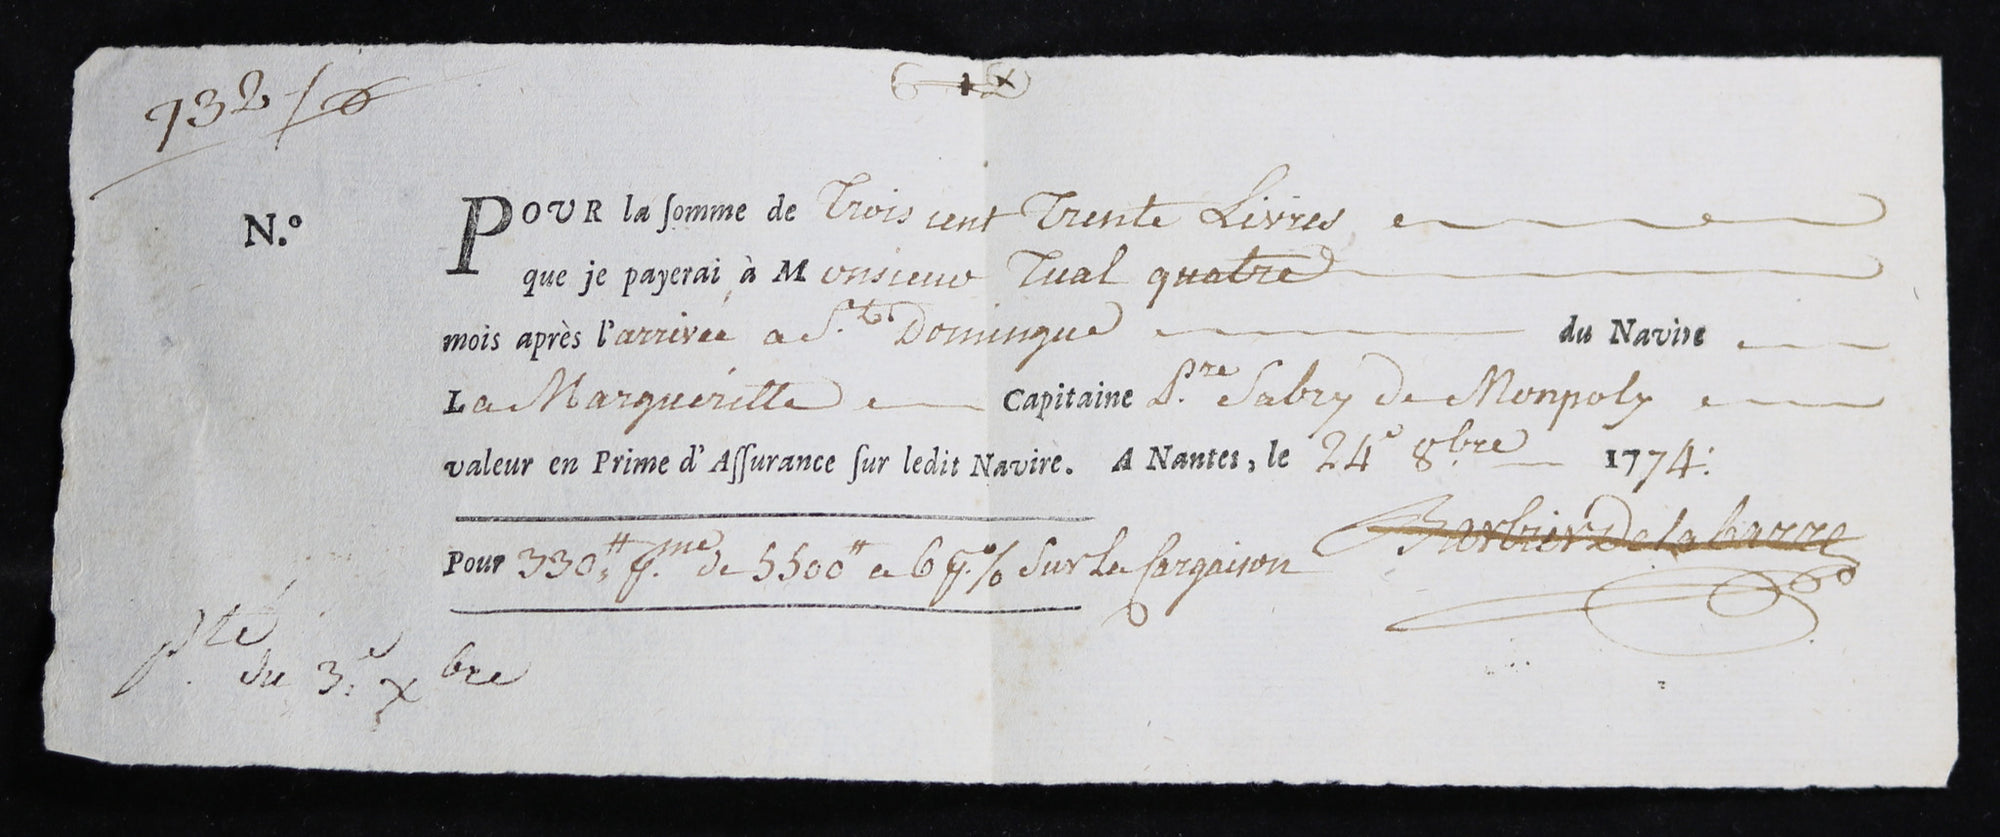 1774 Saint-Domingue - prime d'assurance sur cargaison